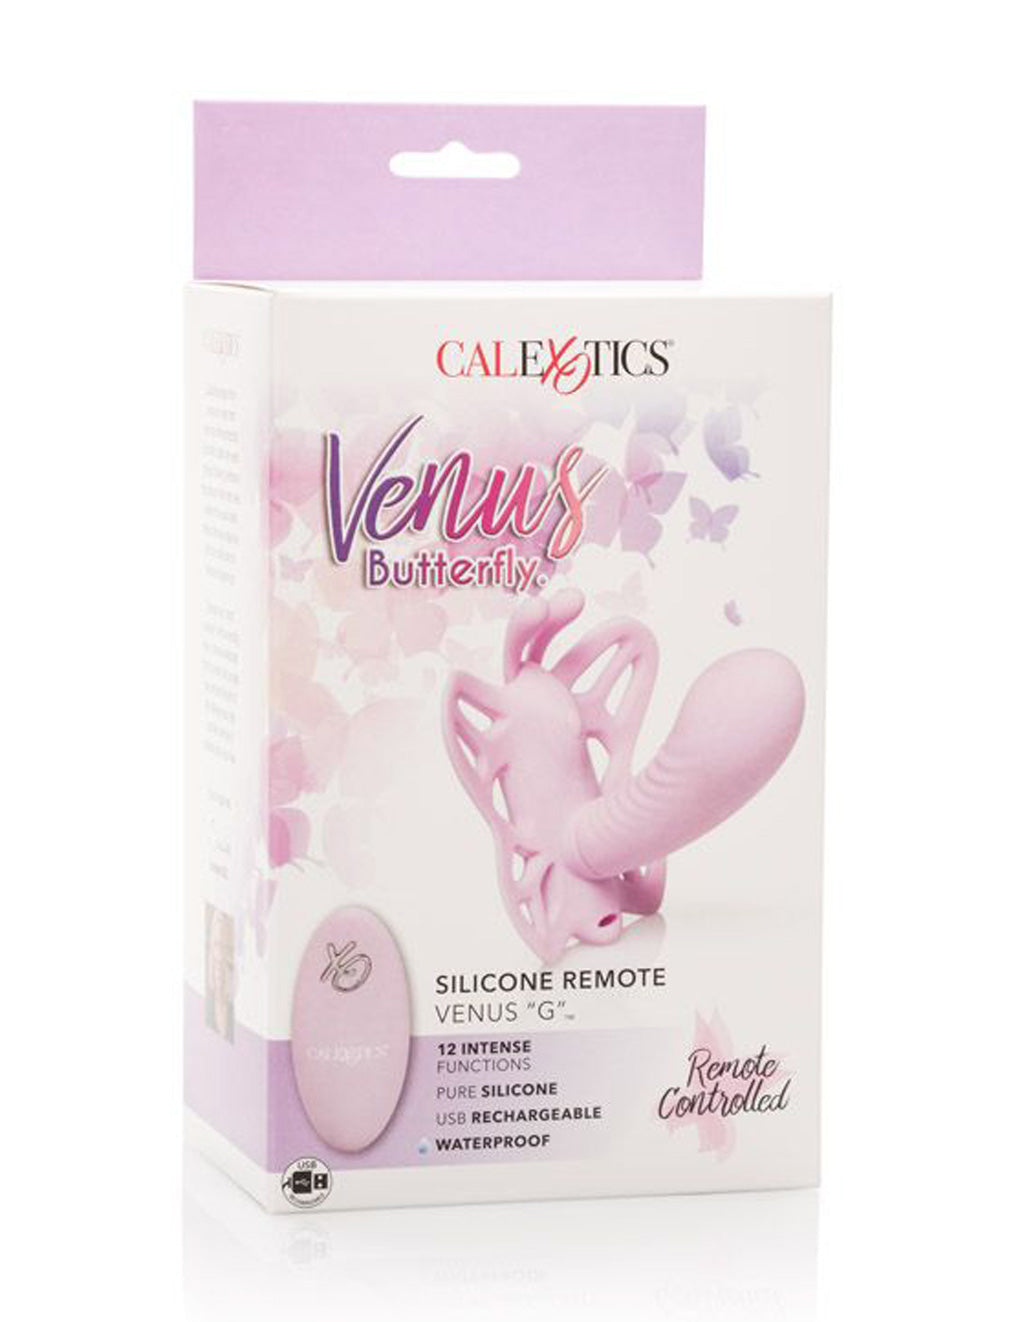 CalExotics Venus Butterfly Venus G- Package